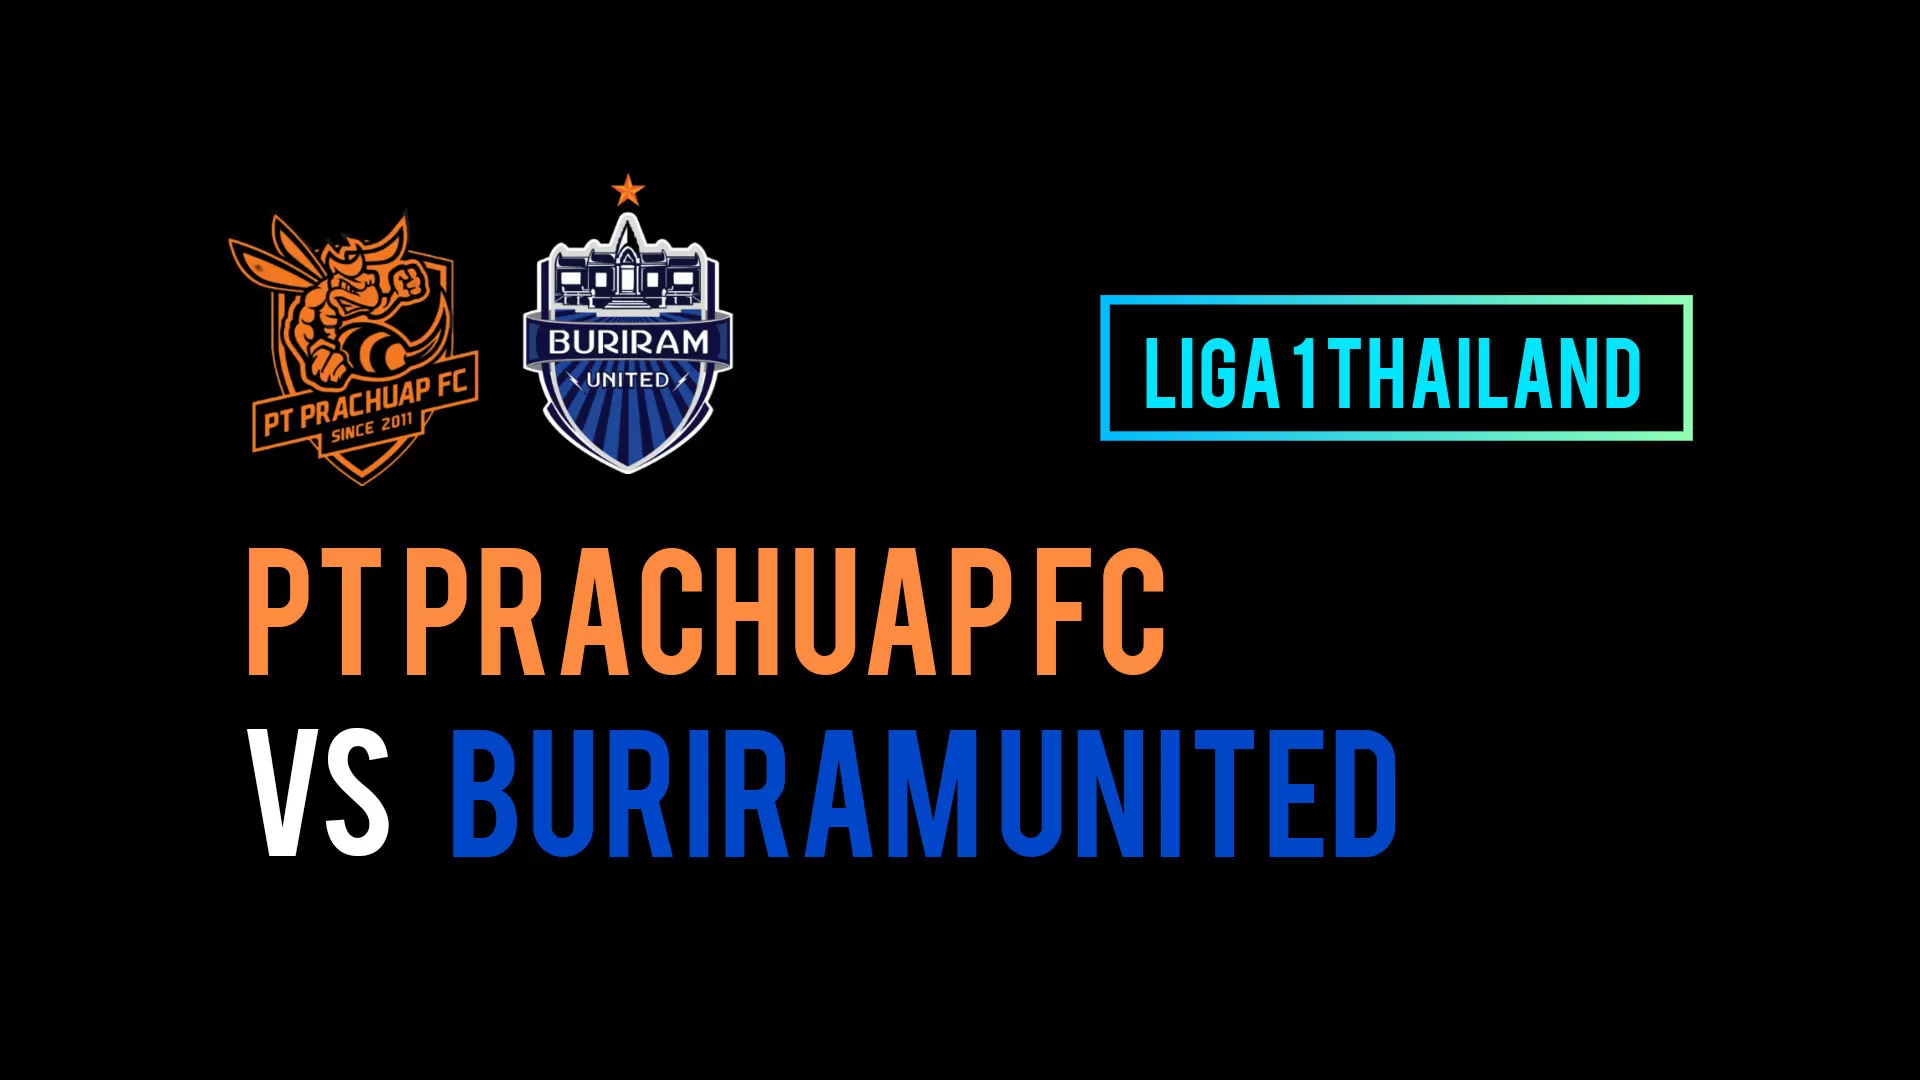 Jadwal Liga 1 Thailand: PT Prachuap FC vs Buriram United, Prediksi Skor, H2H, Susunan Pemain dan Link Live Score